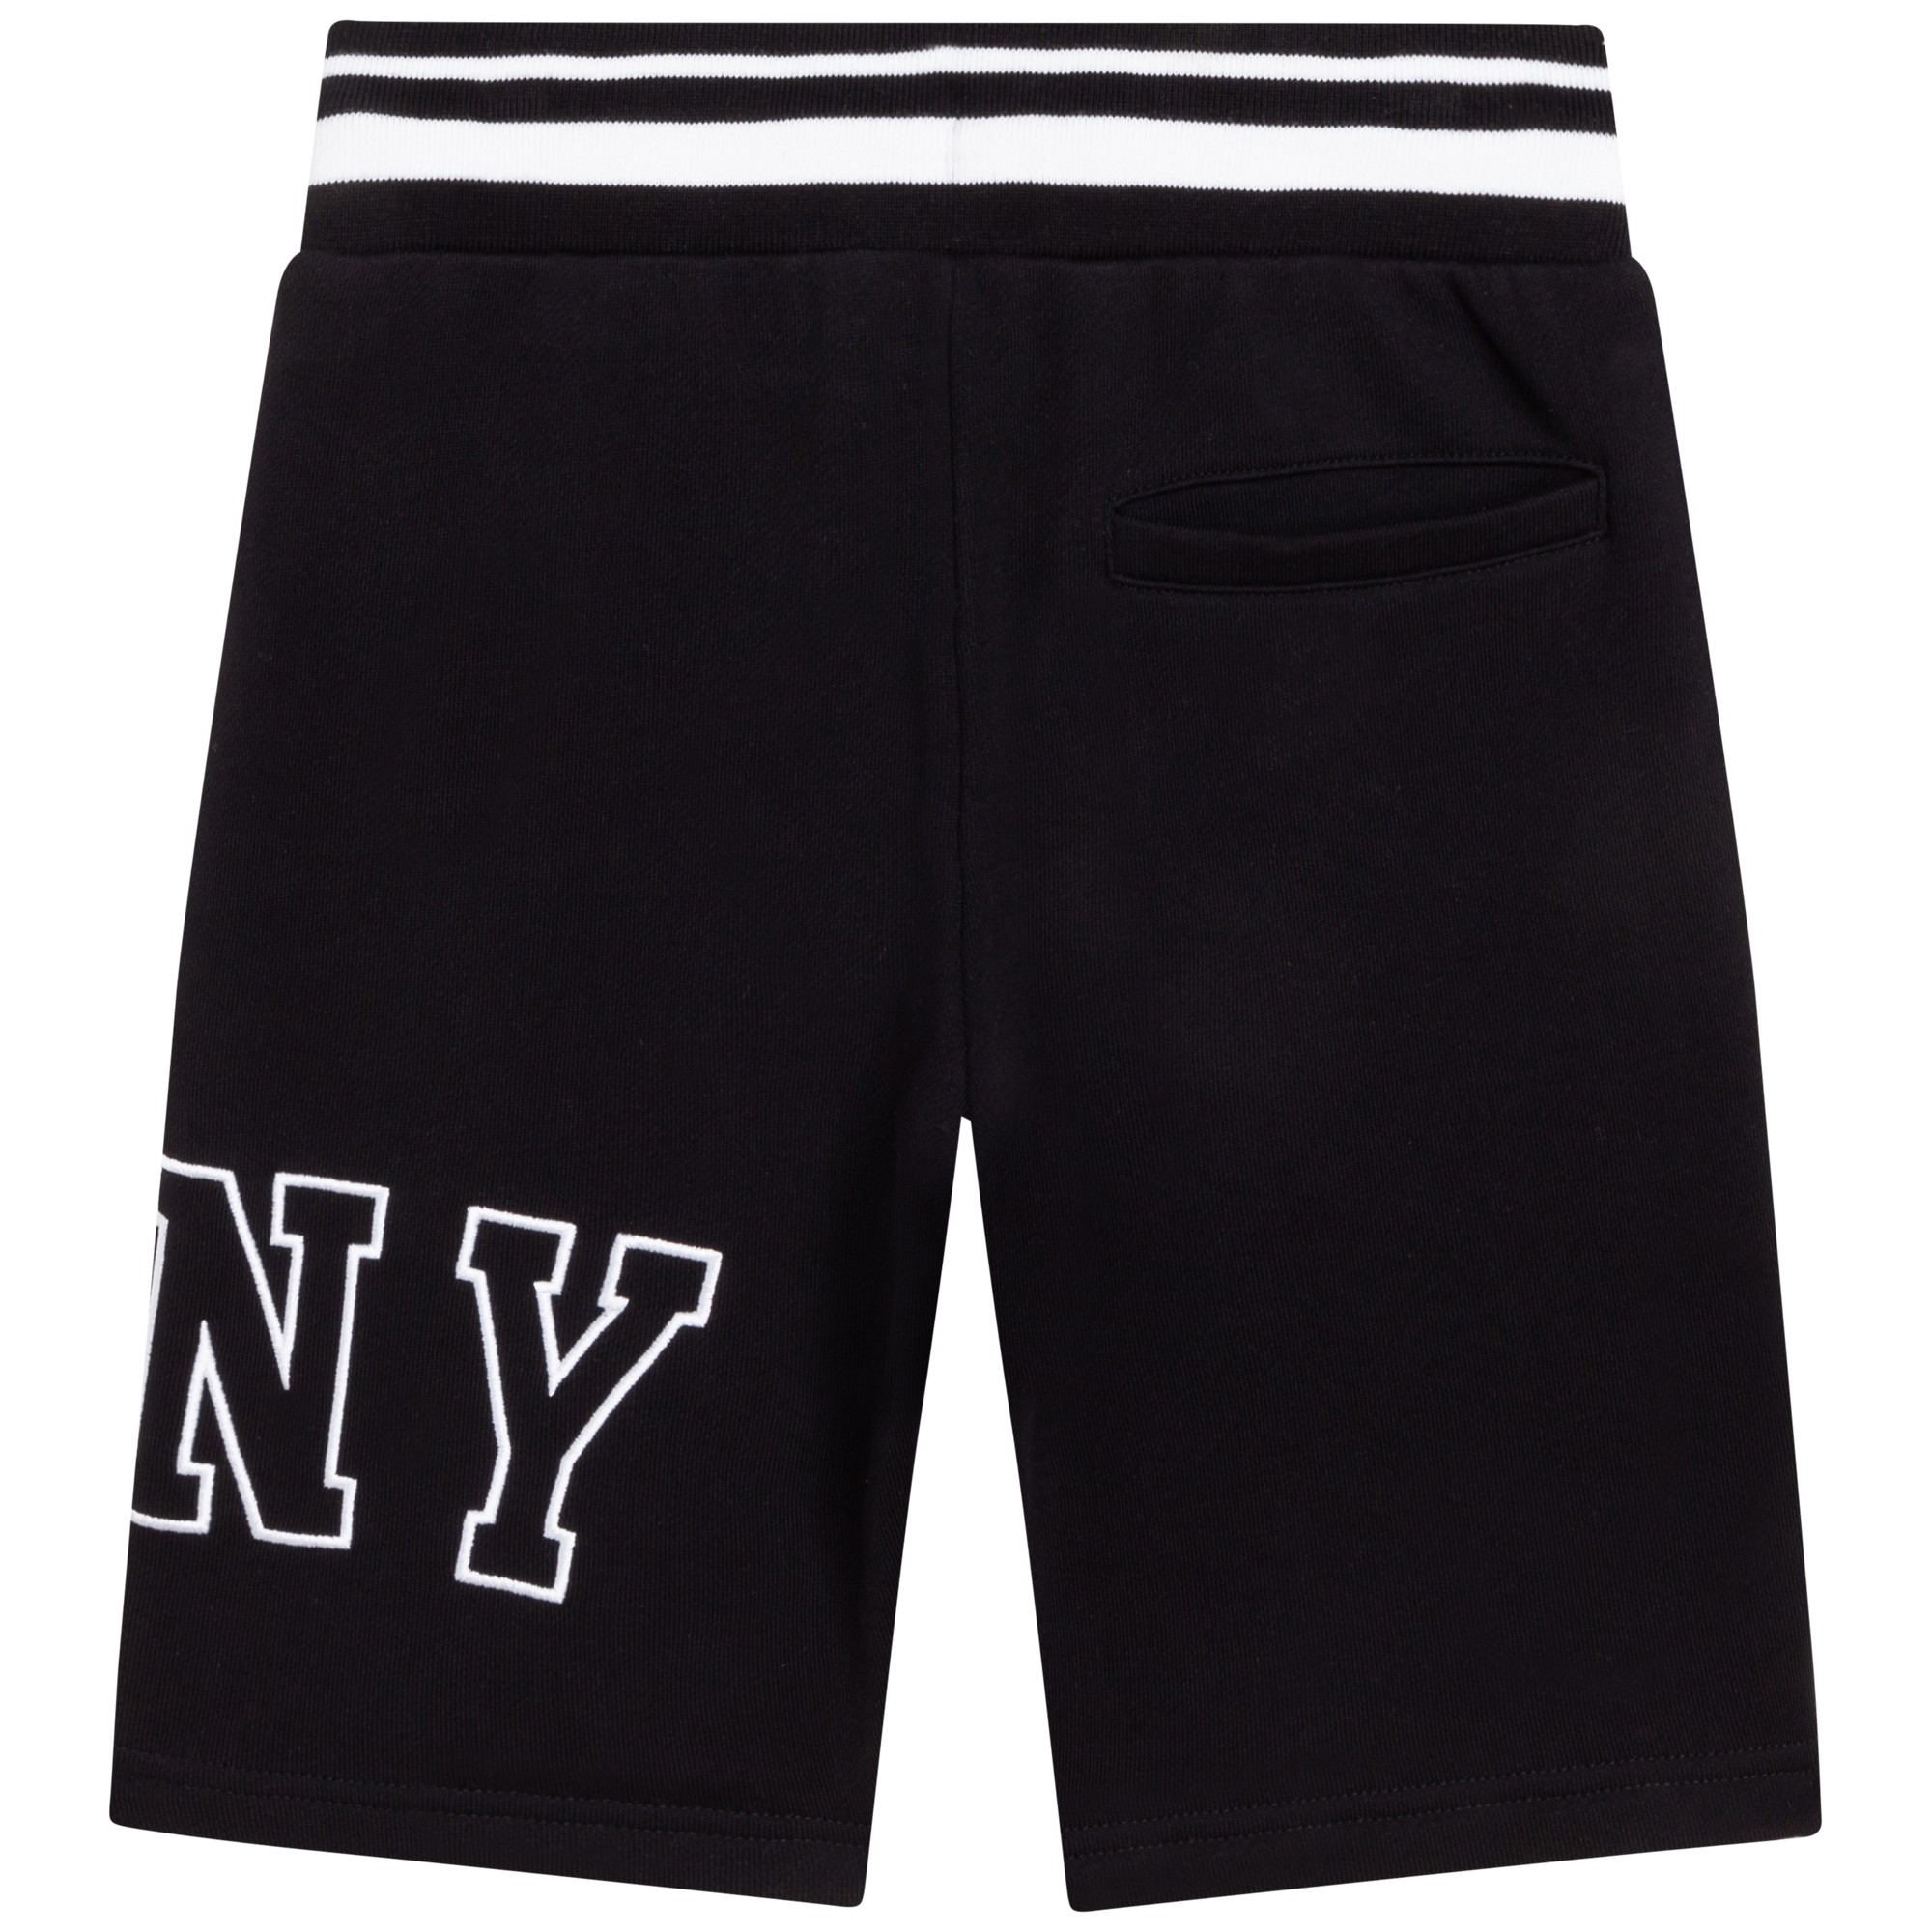 Bermuda-Shorts aus Baumwollfleece DKNY Für JUNGE